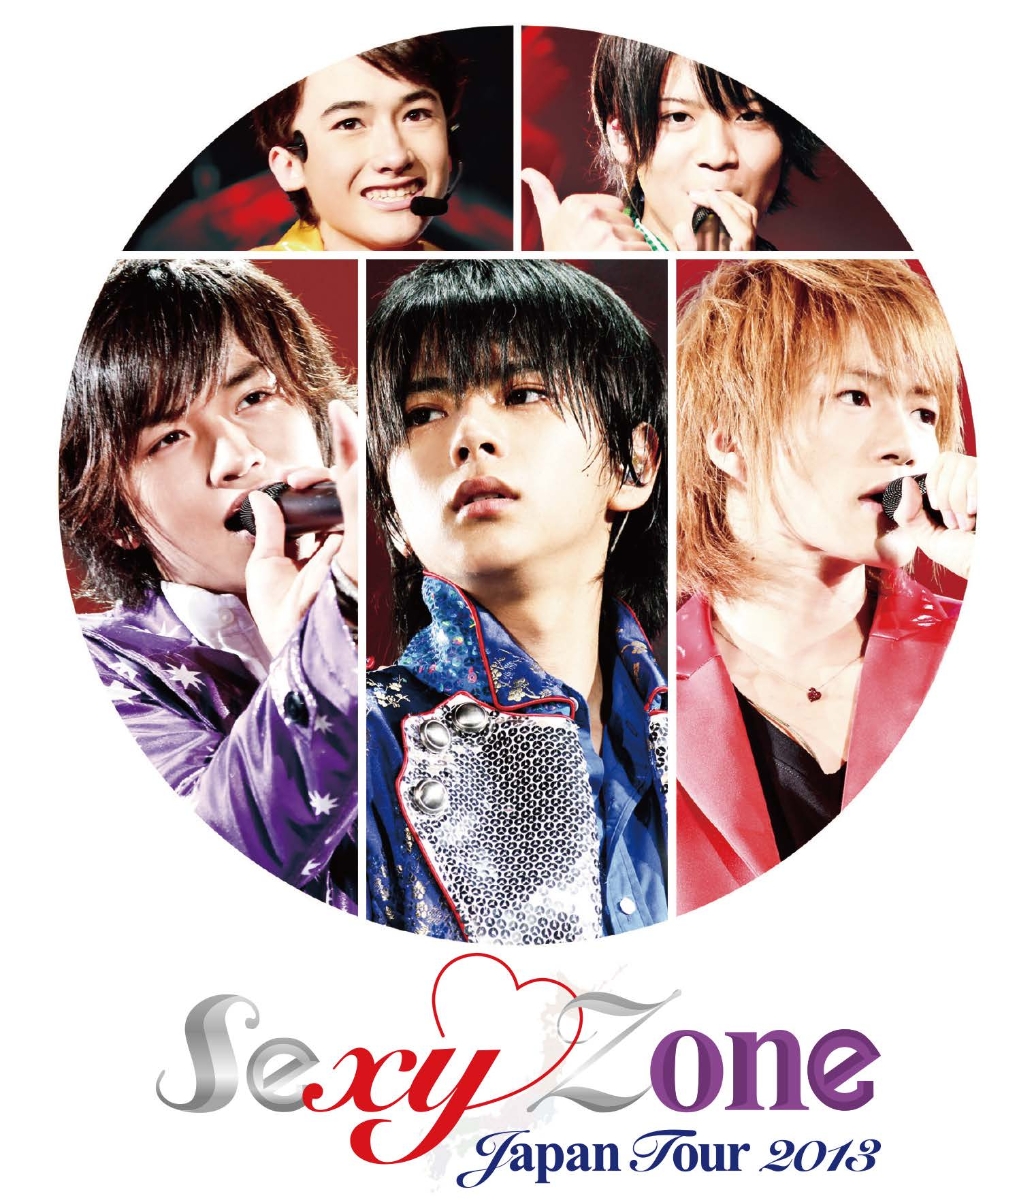 楽天ブックス: Sexy Zone Japan Tour 2013【Blu-ray】 - Sexy Zone